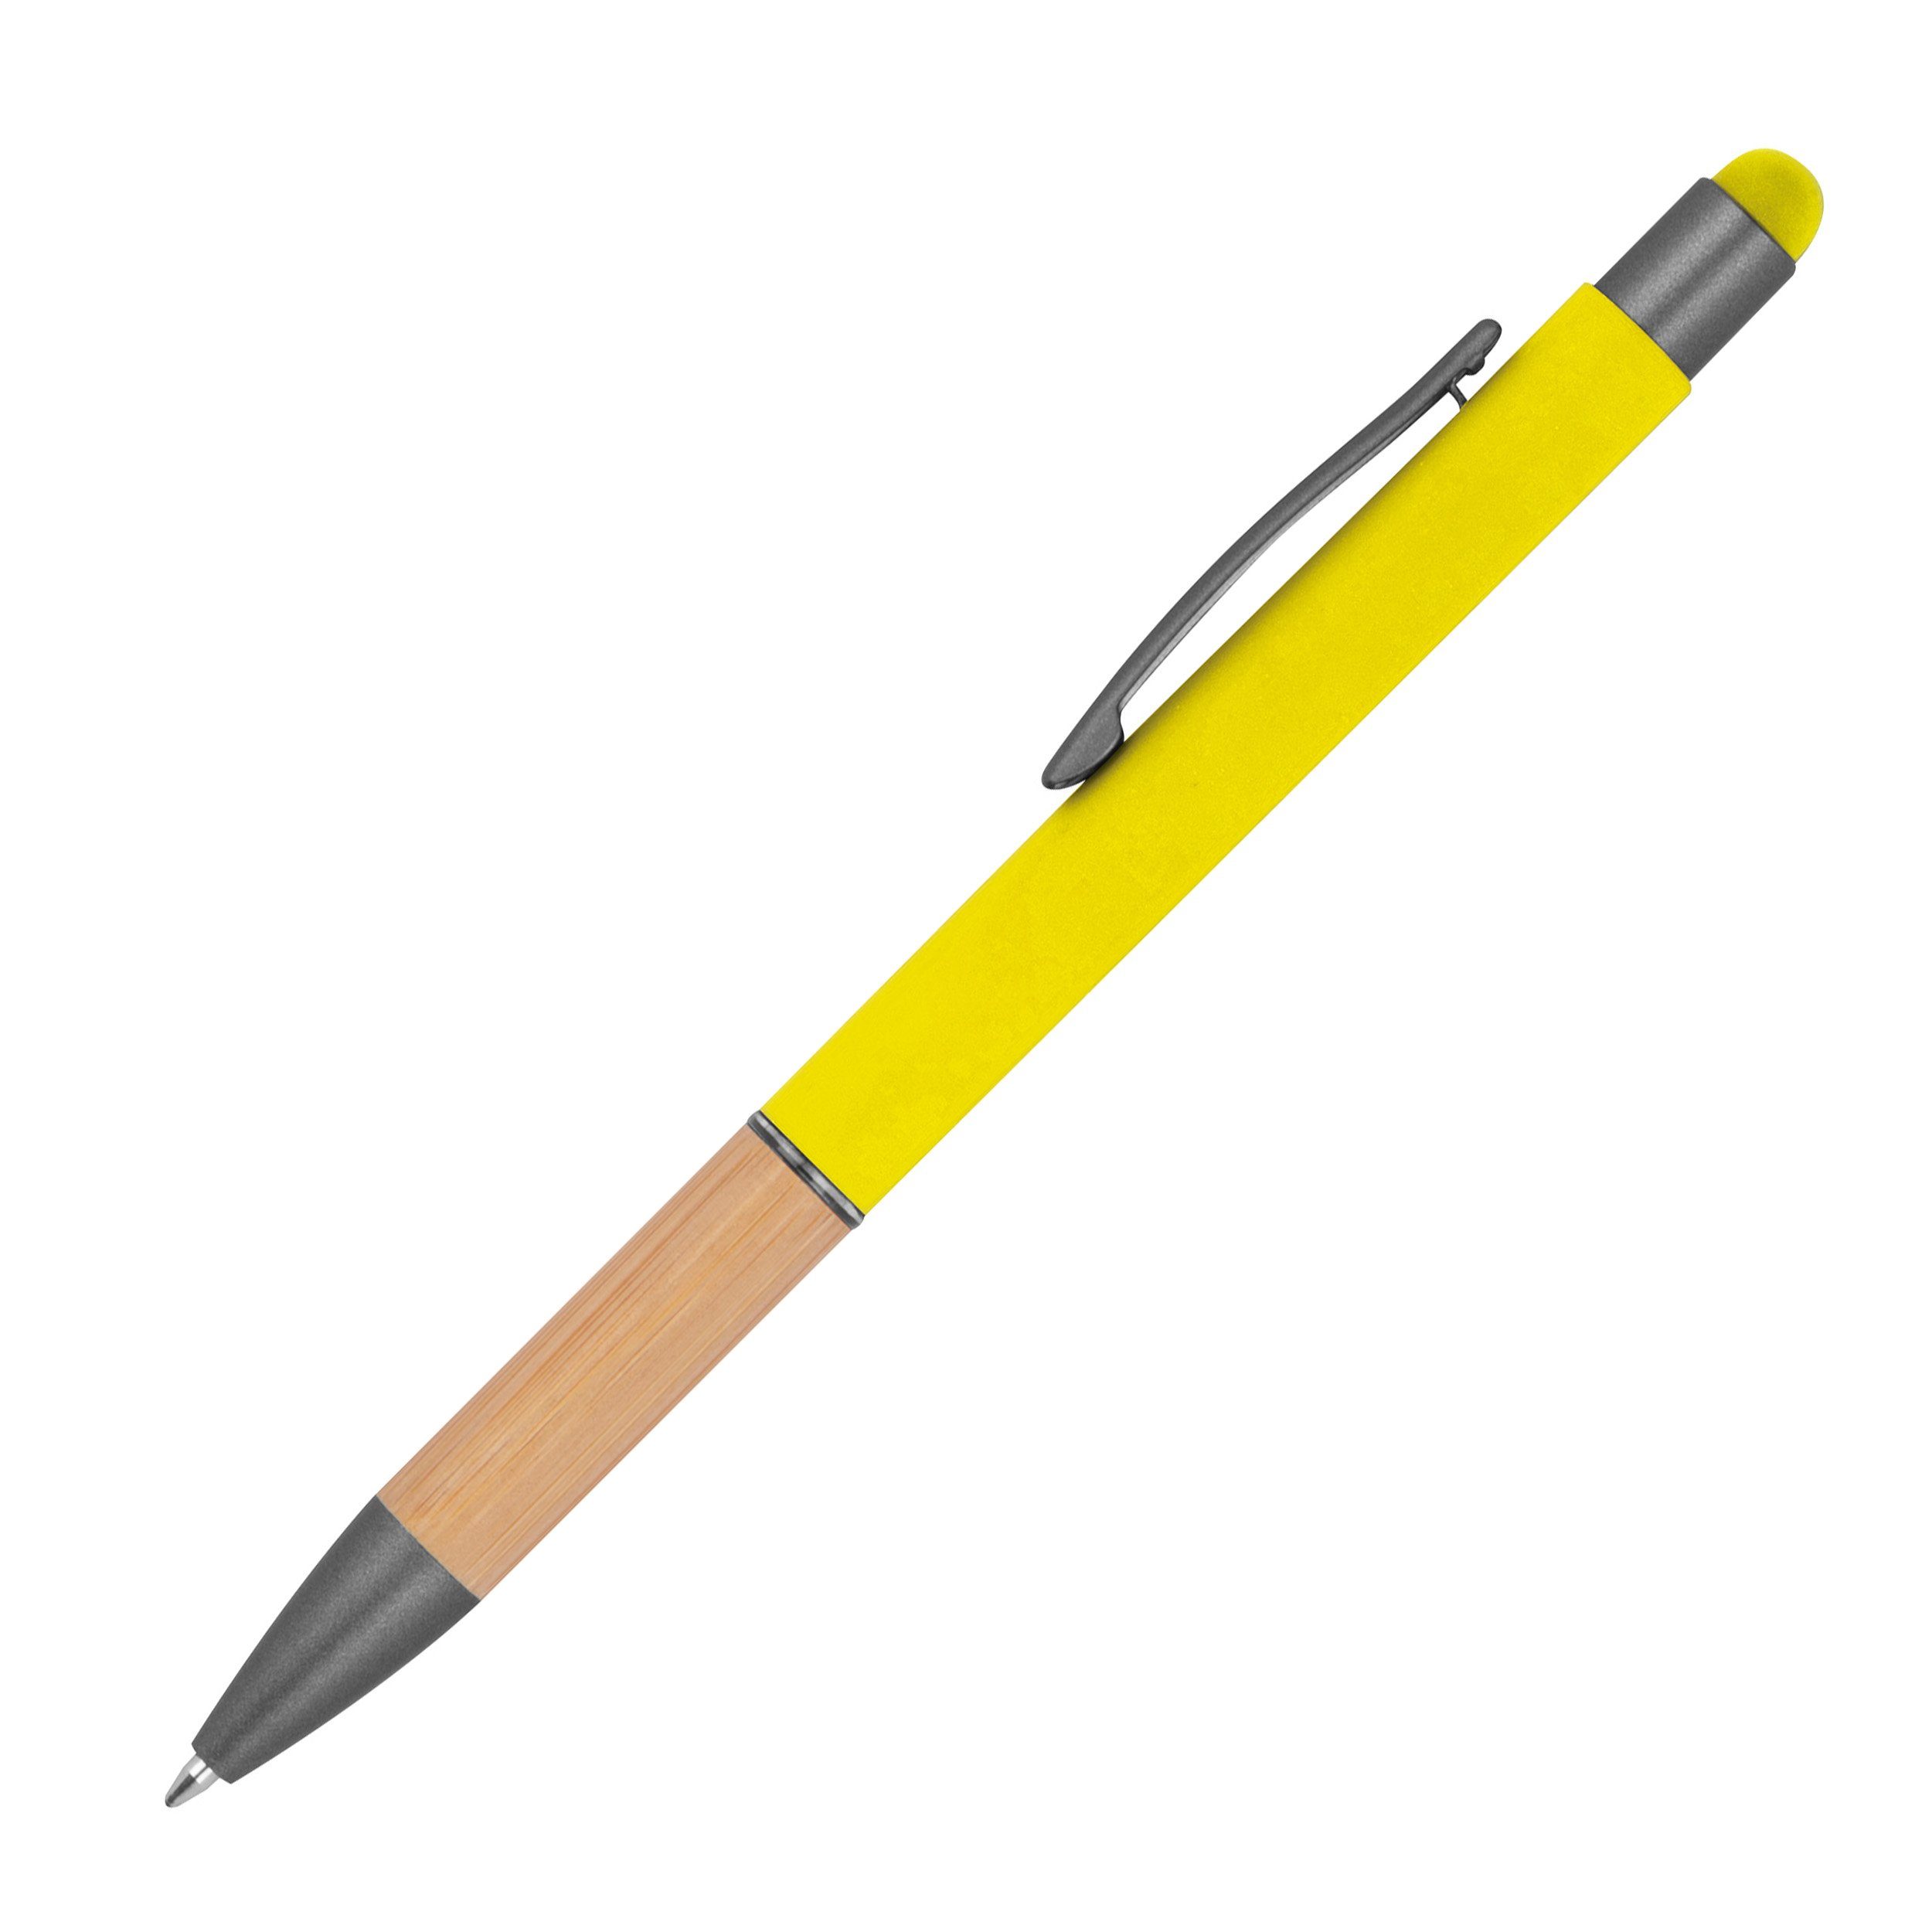 Livepac Office Kugelschreiber 10 Touchpen Kugelschreiber mit Griffzone aus Bambus / Farbe: gelb